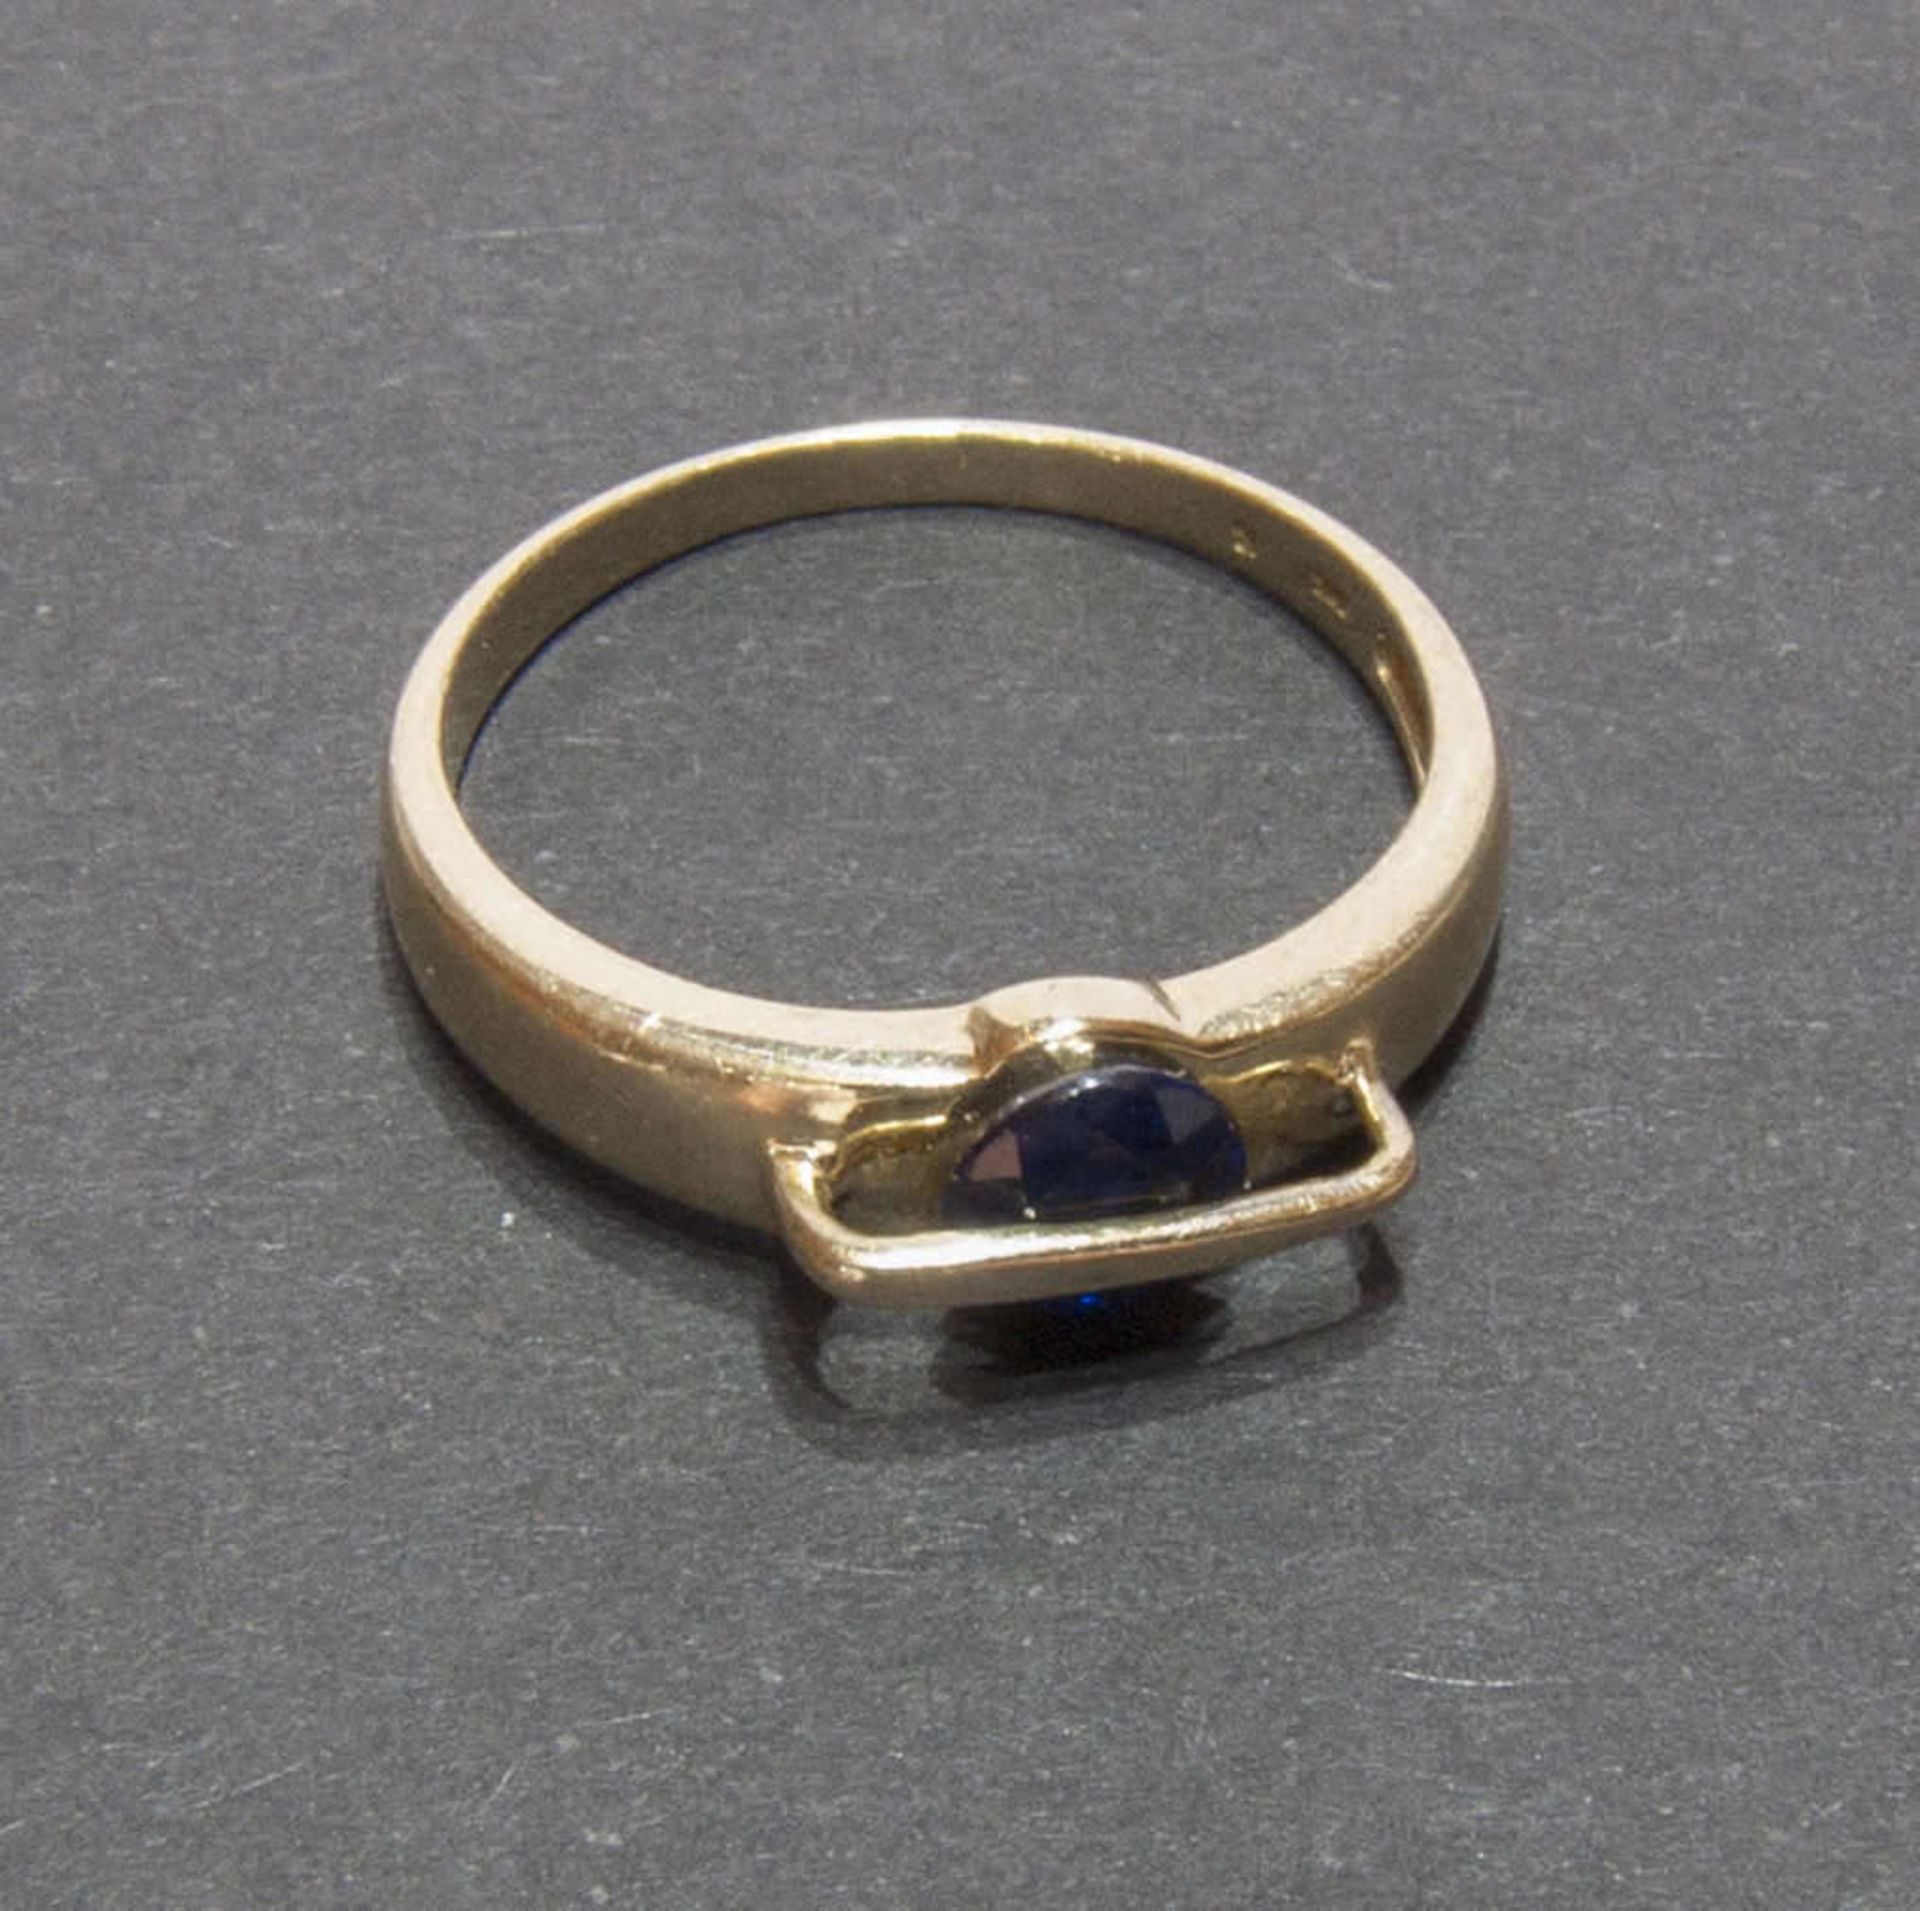 Damenring, 585er Gelbgold, besetzt mit blauem Halbedelstein. Ringgröße 53, Gewicht ca. 2,2 gr.